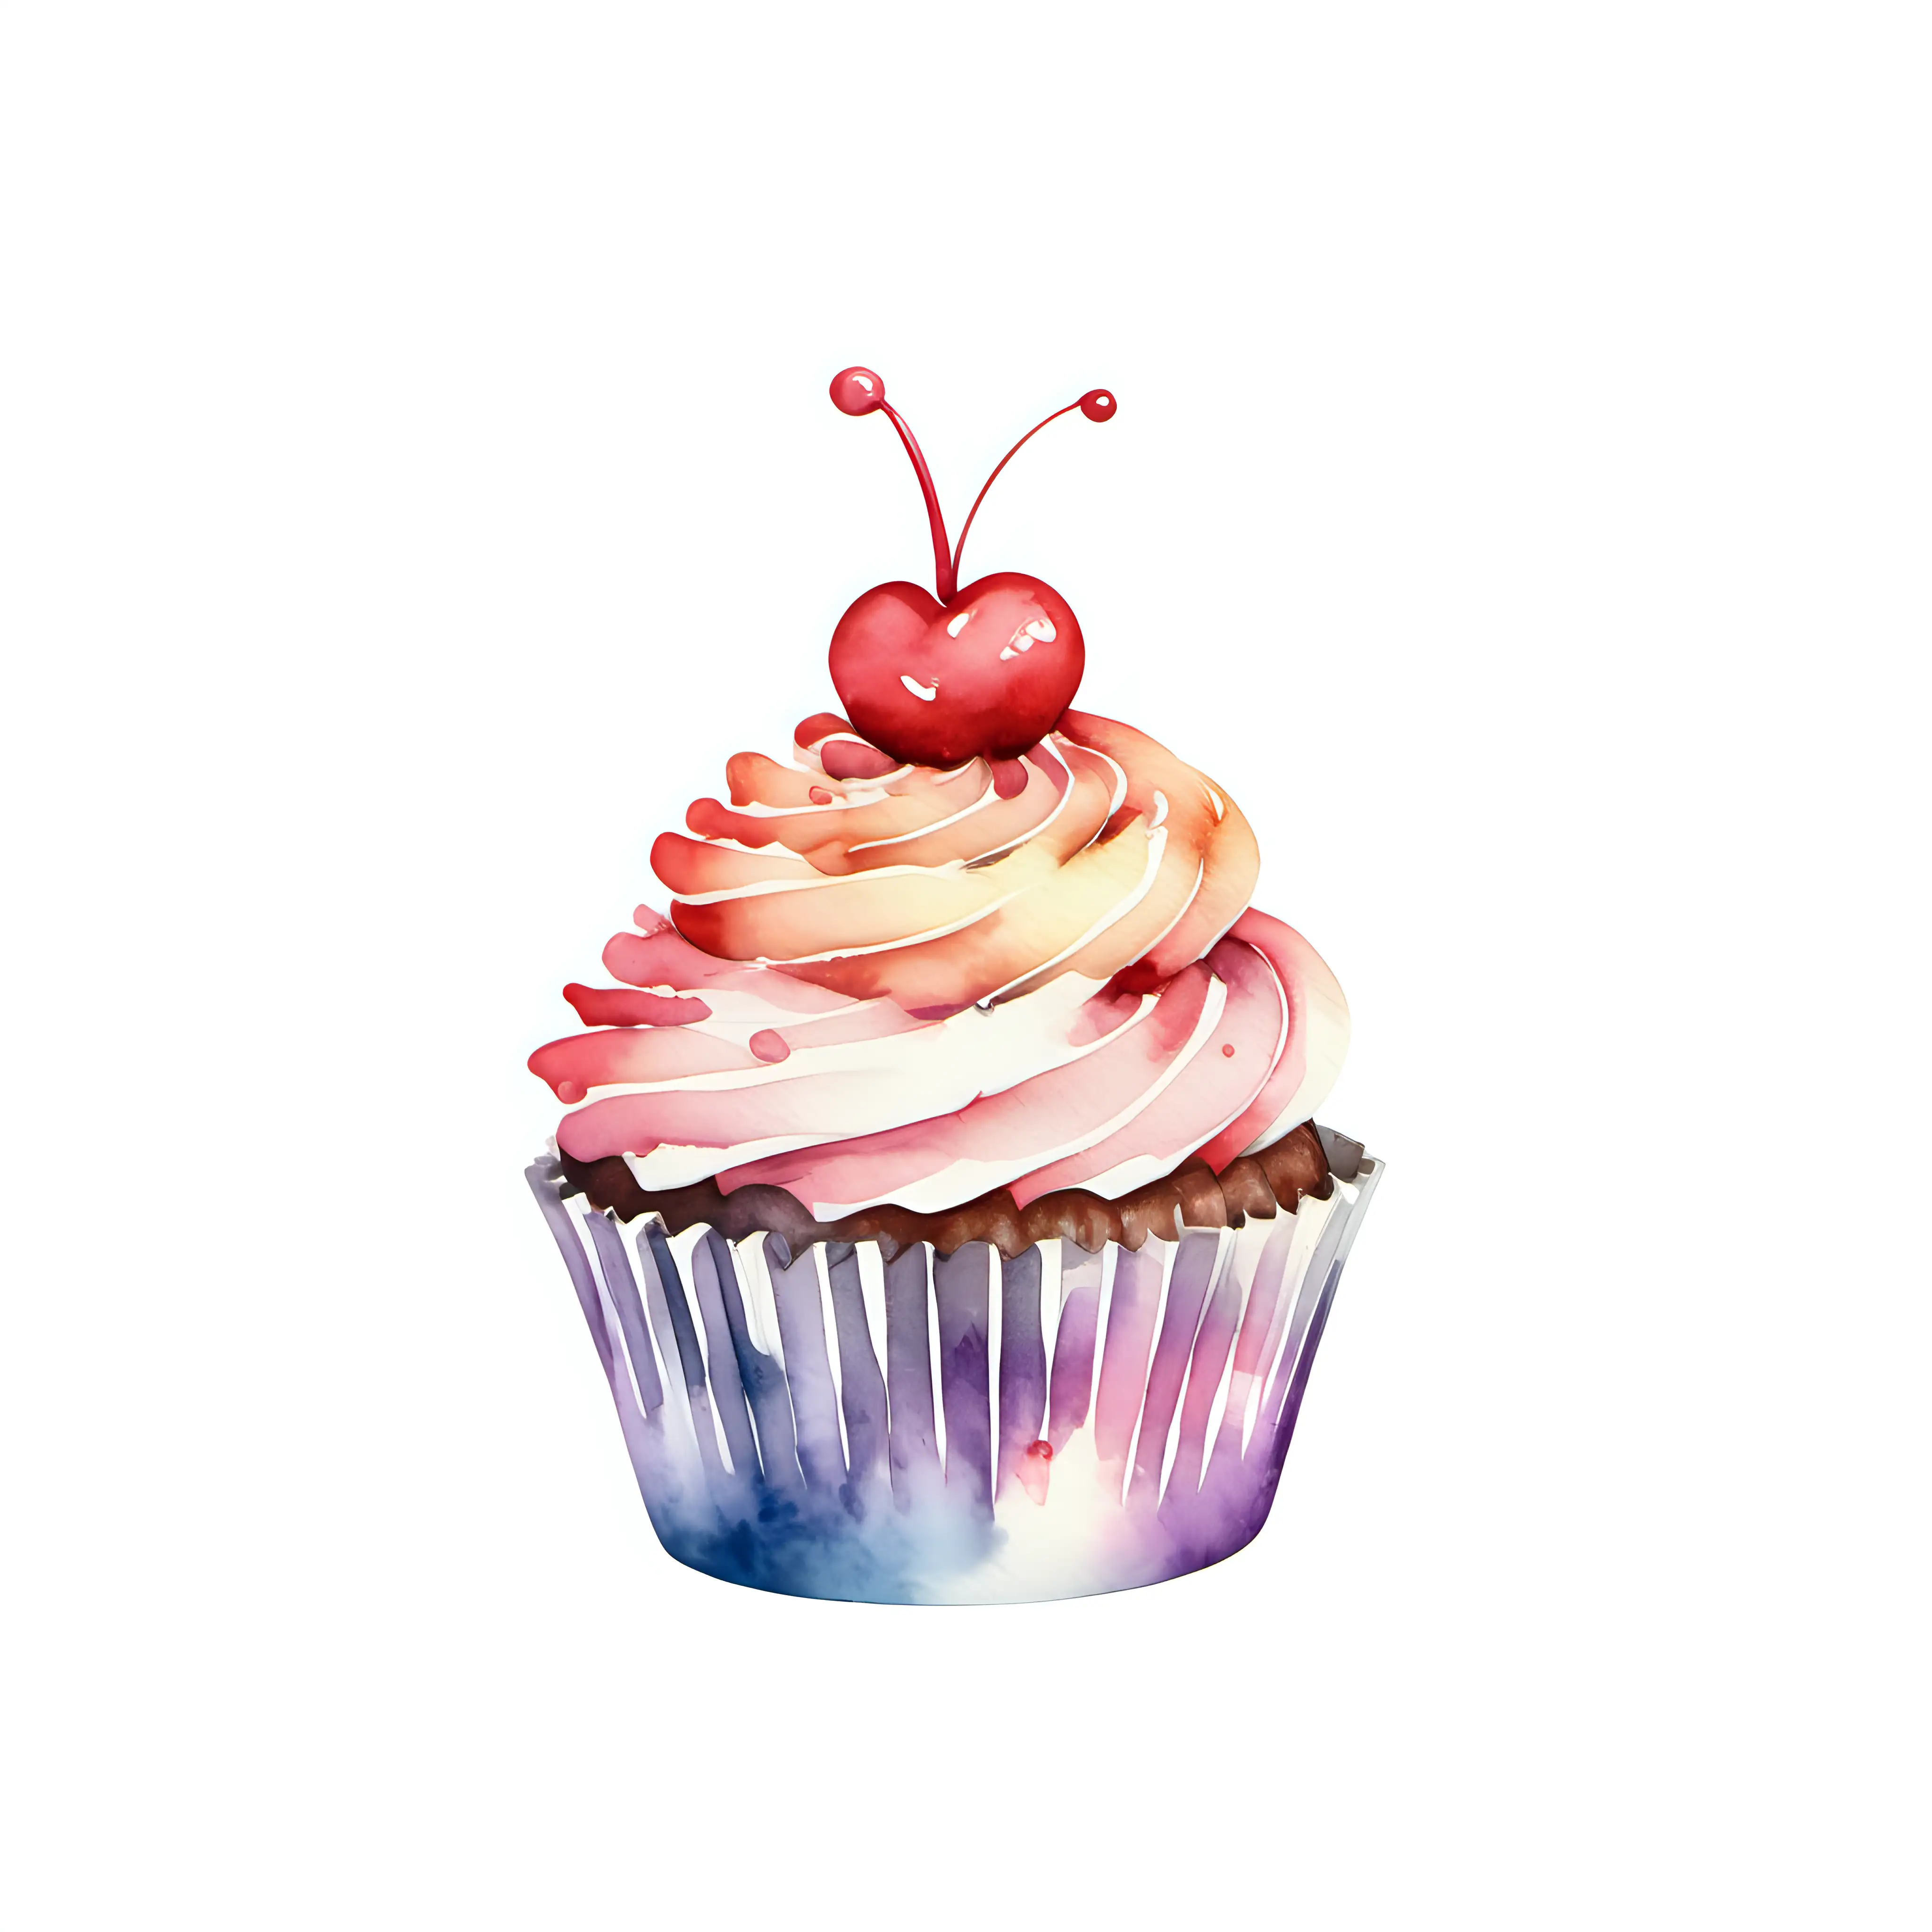 Delicate Watercolor Single Cupcake Illustration